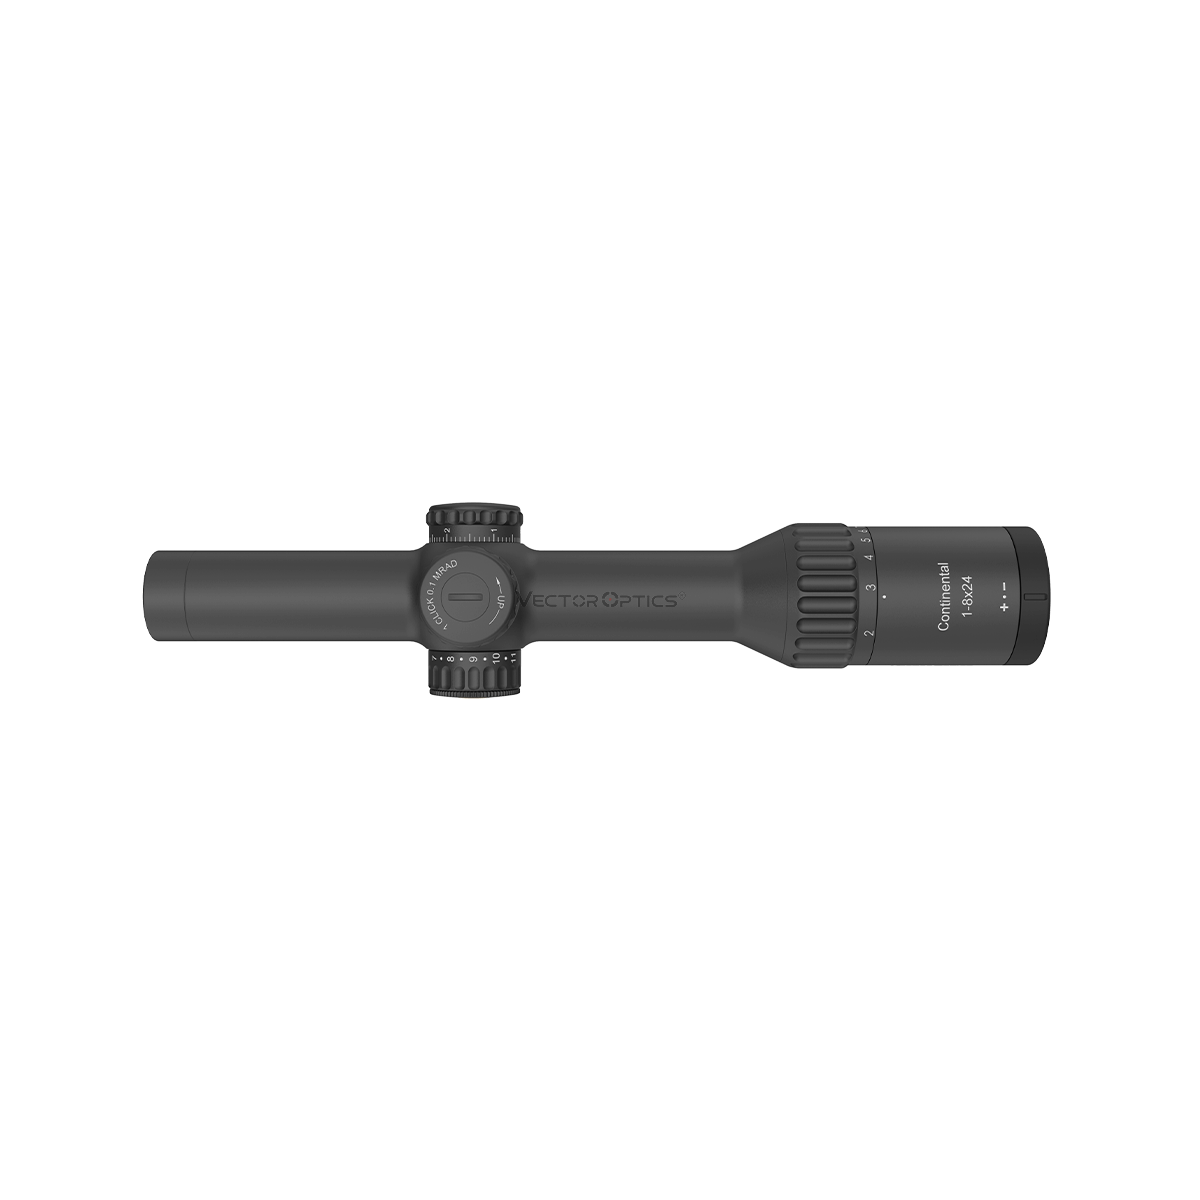 Continental x8 1-8x24i ED Fiber LPVO Riflescope